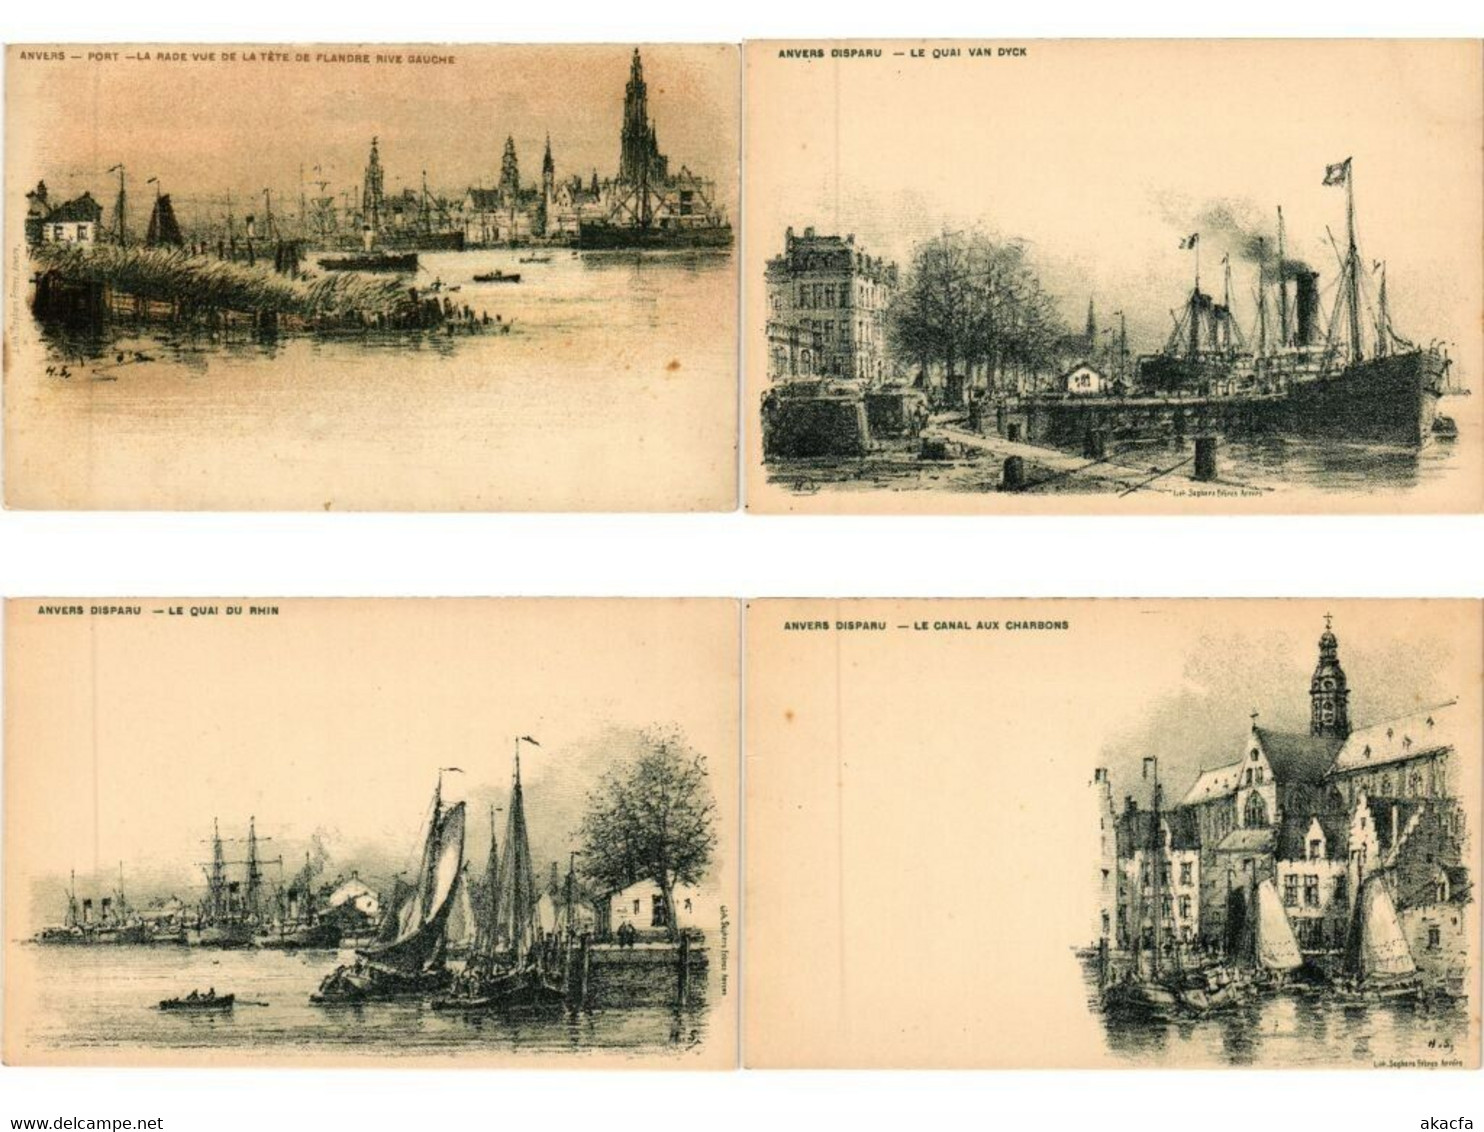 ANTWERP ANVERS ANTWERPEN BELGIUM 1000 Vintage Postcards Mostly pre-1950 (L5569)